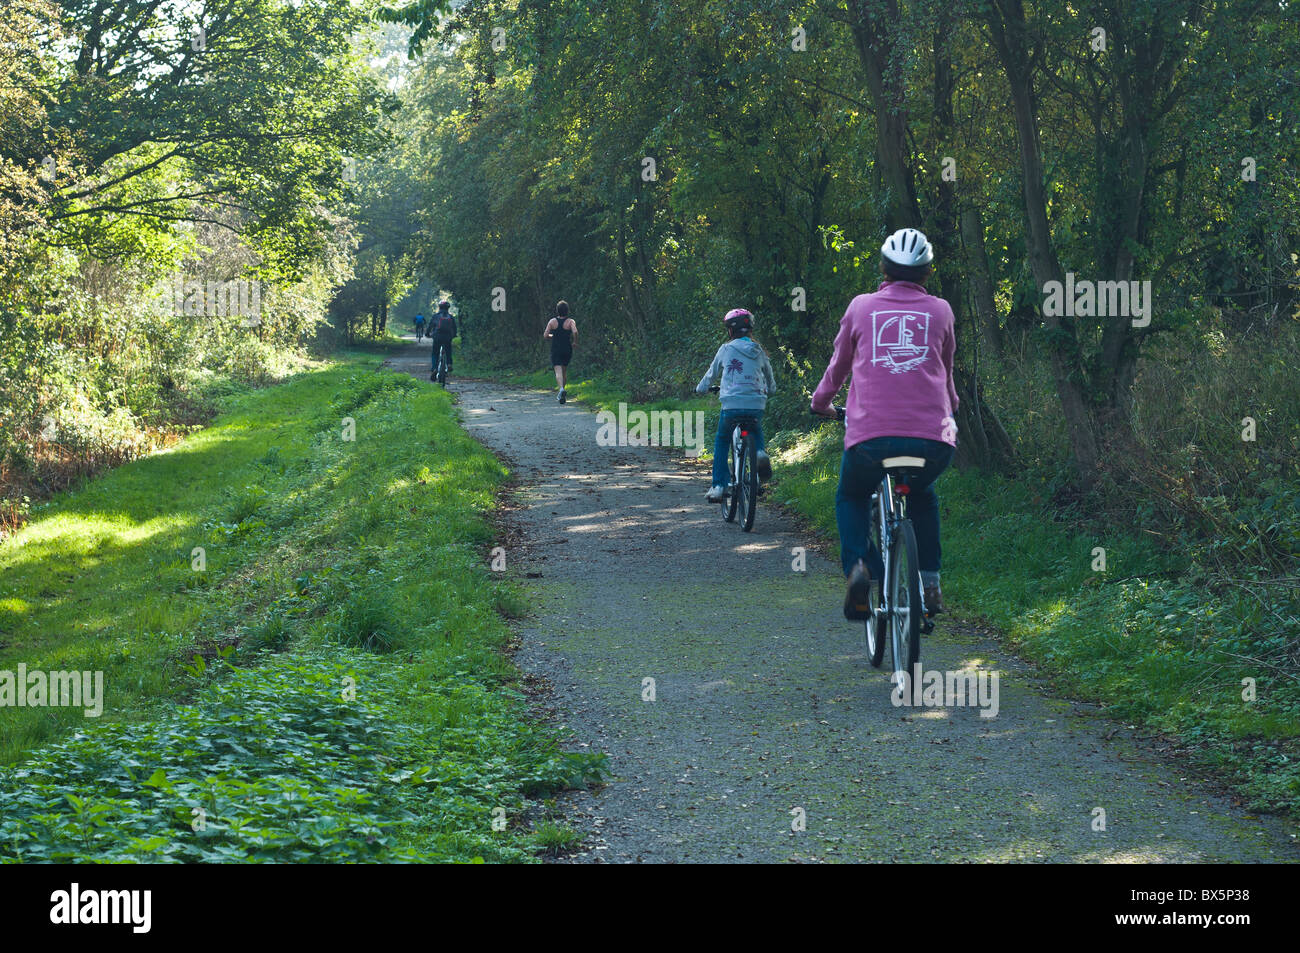 dh piste cyclable WETHERBY WEST YORKSHIRE famille vélos été royaume-uni cyclepath à vélo country voies jeunes enfants angleterre lane vélo campagne des bois Banque D'Images